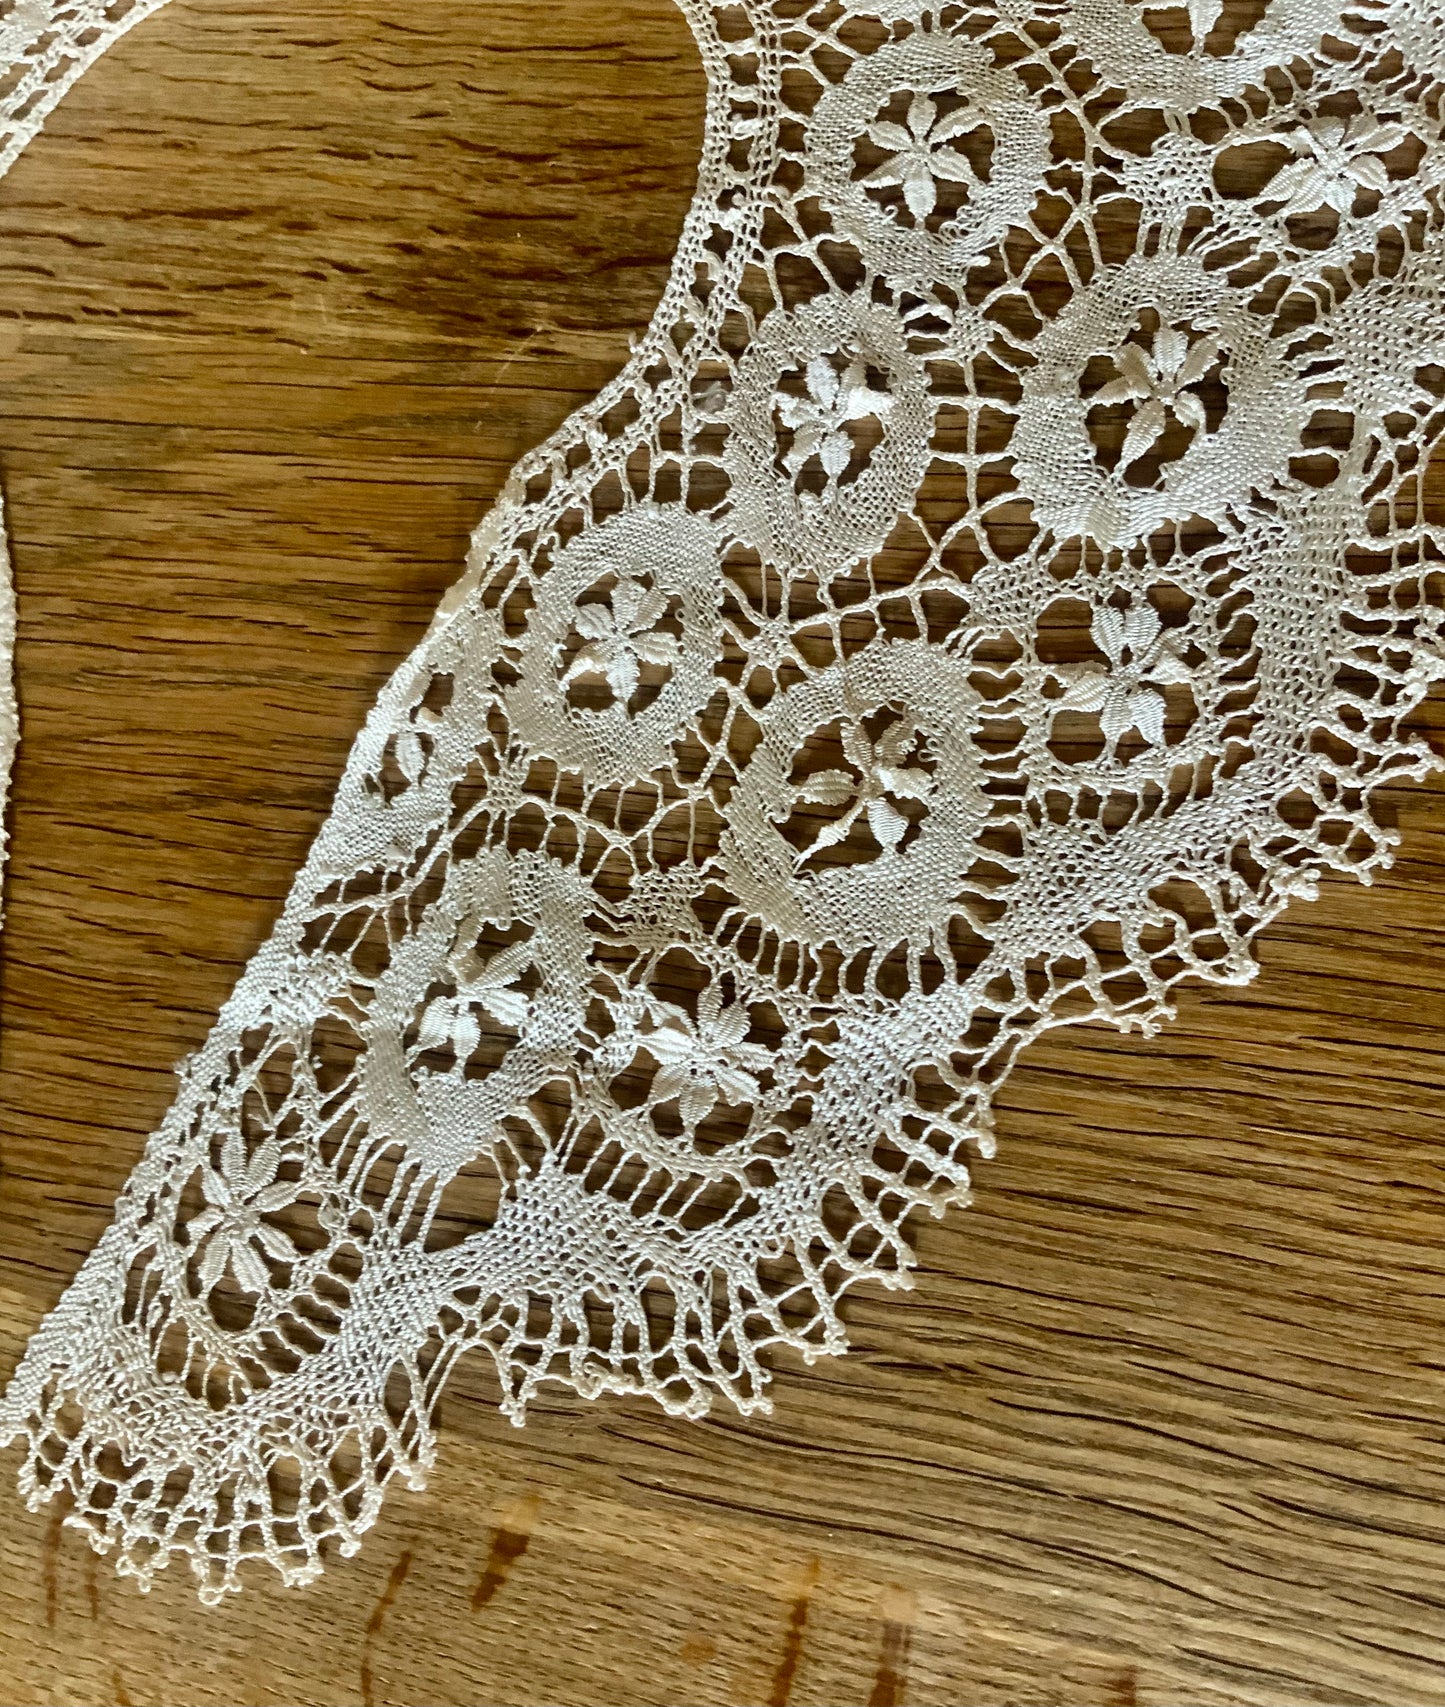 Antique Lace Collar - 1900